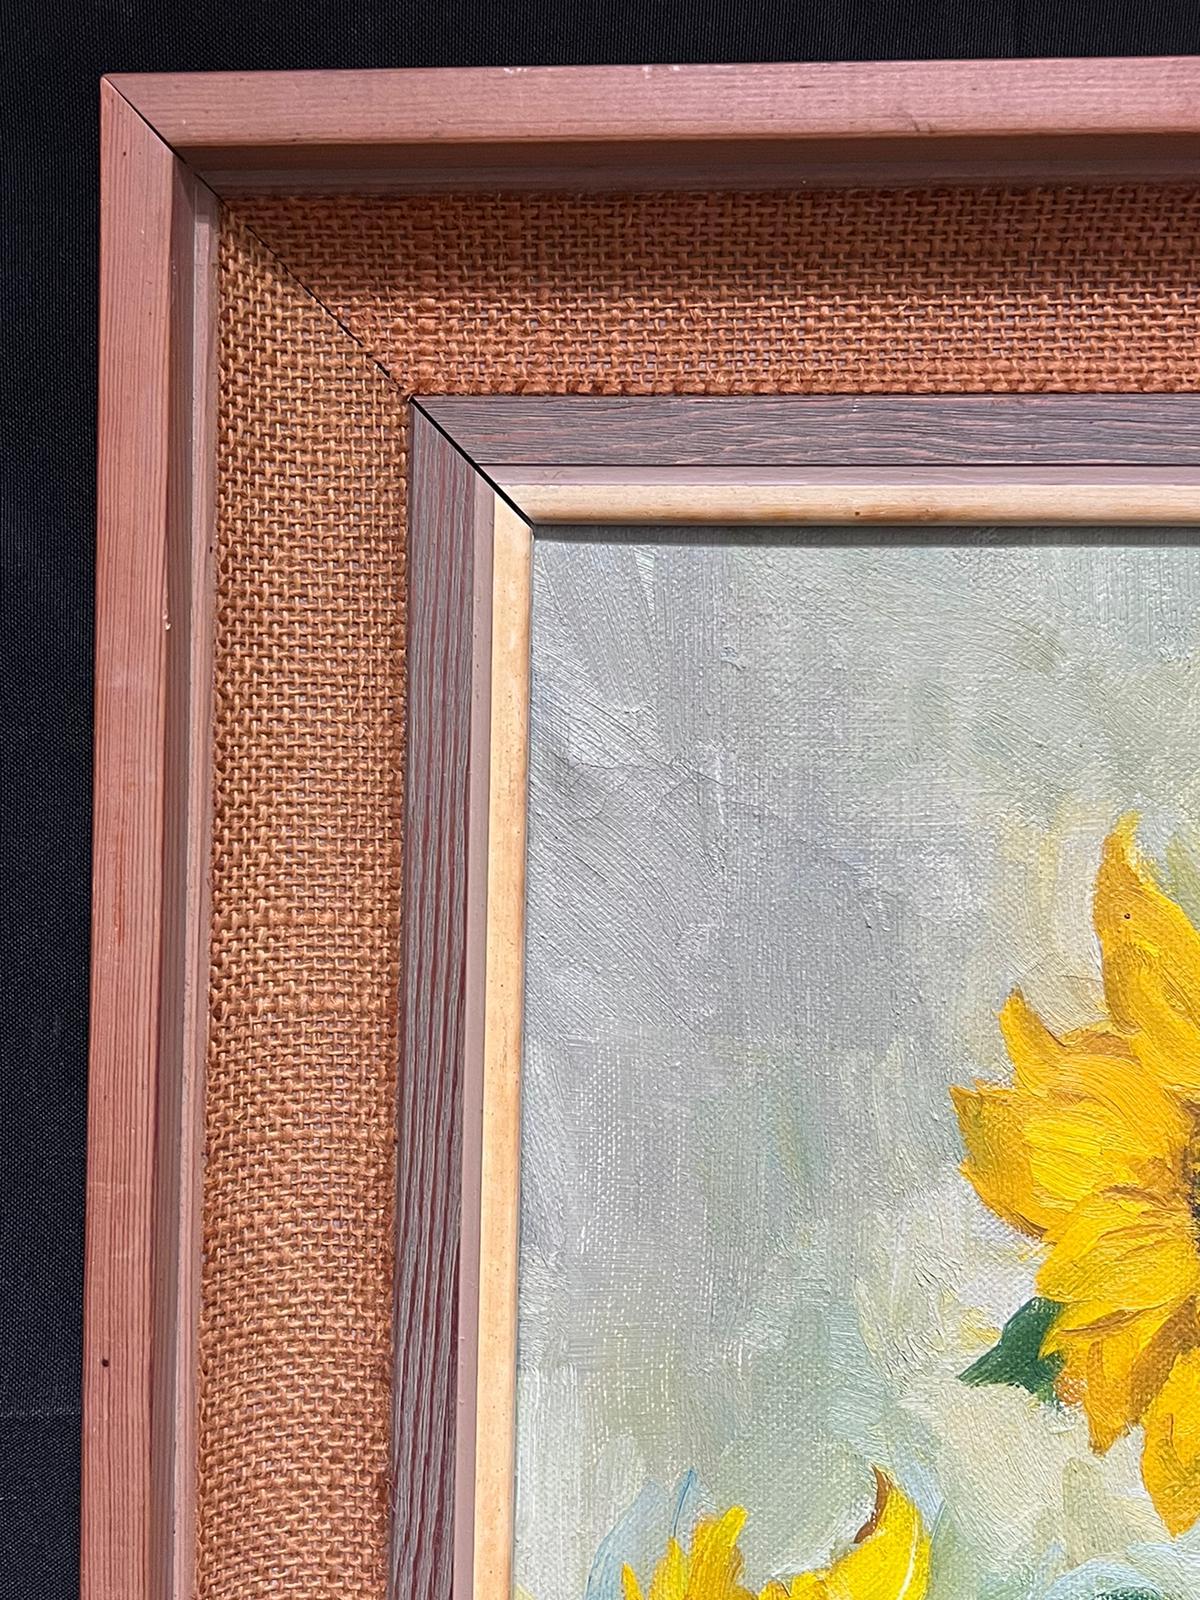 Sonnenblumen in Vase 1950er Jahre English Impressionist Signiertes Ölgemälde auf Leinwand (Braun), Still-Life Painting, von Mid 20th Century English Impressionist